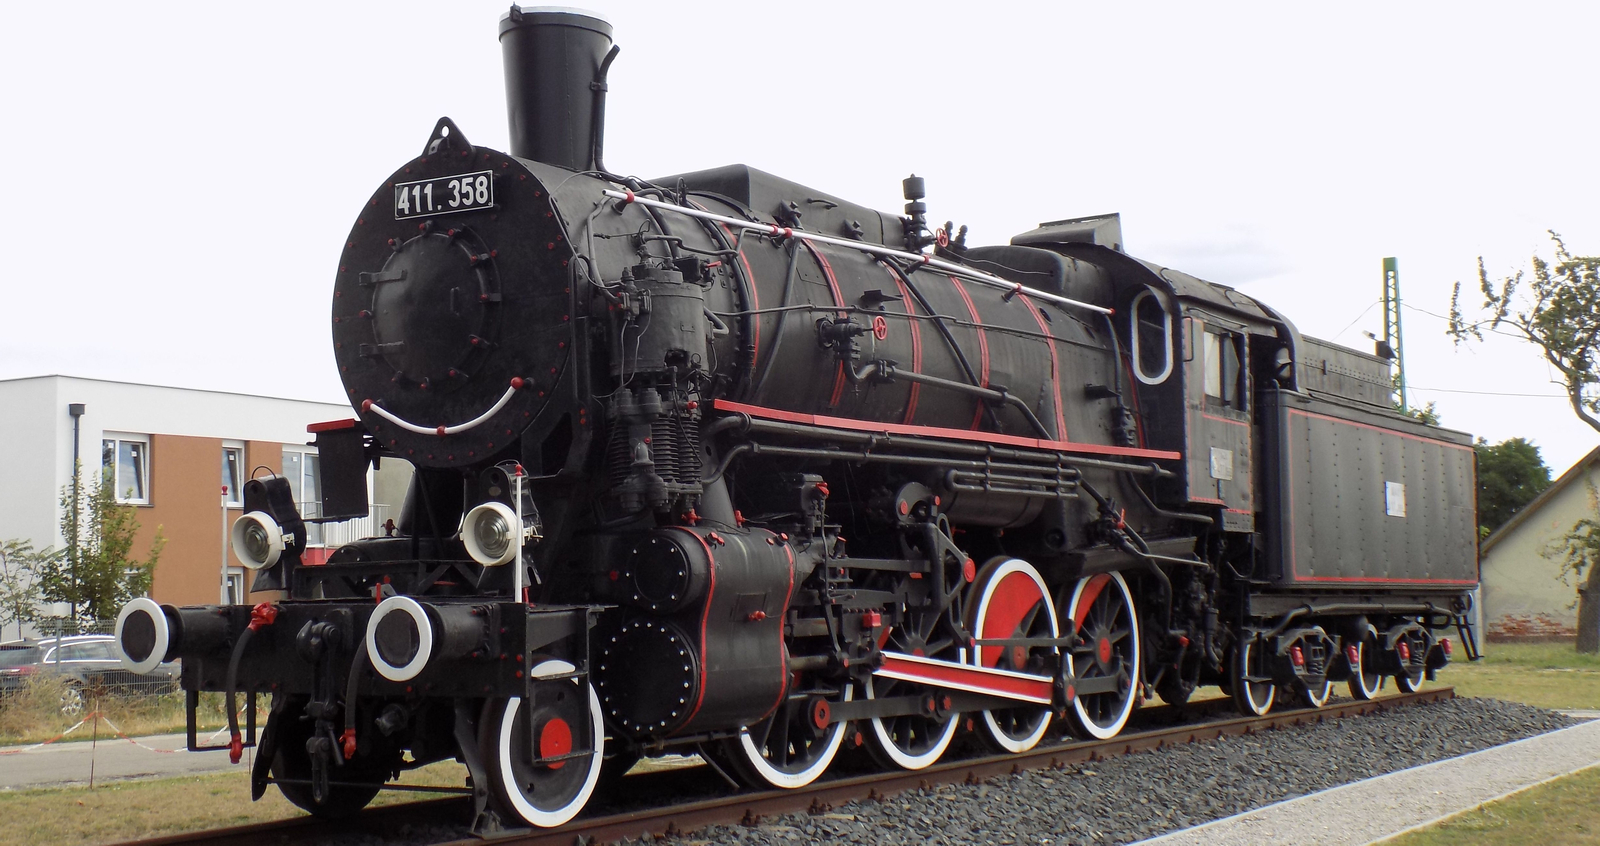 411.358 on display at Hegyeshalom Railway Station